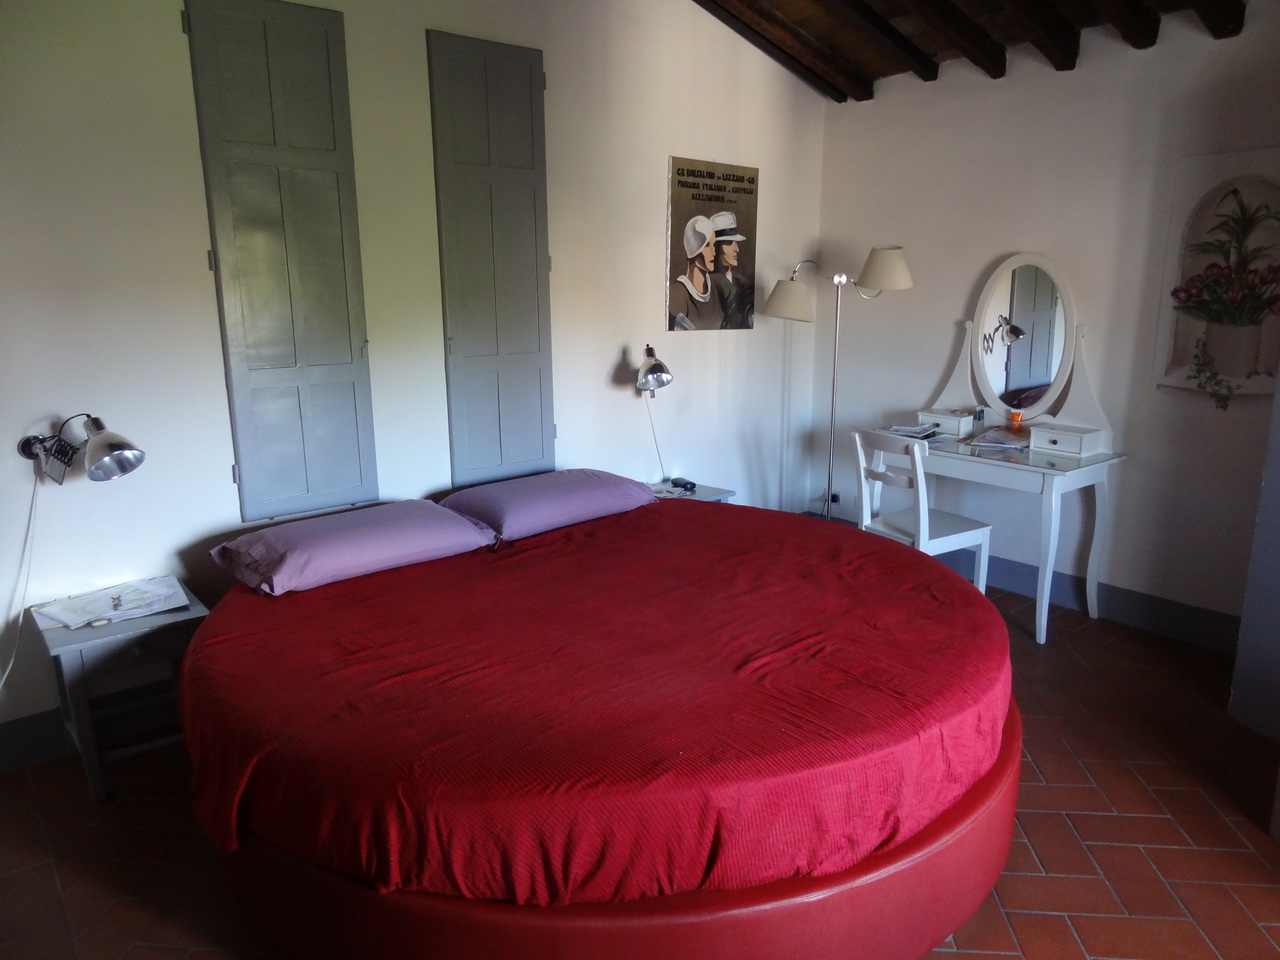 Красная круглая кровать с сиреневыми подушками